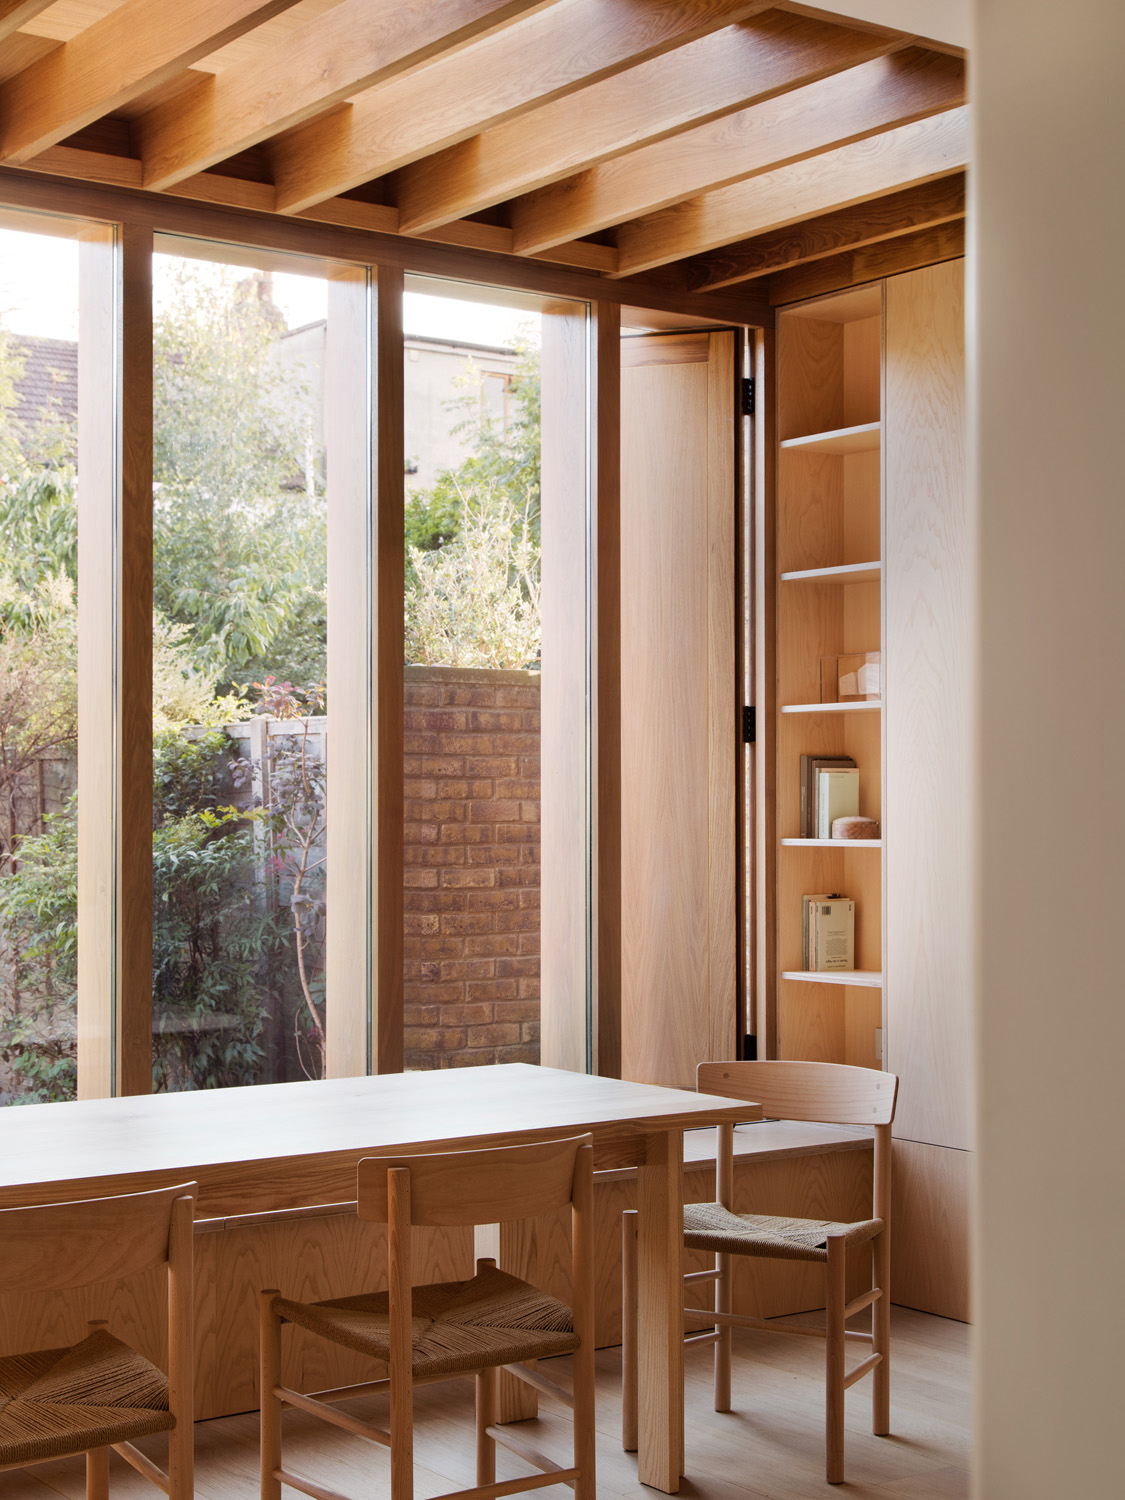 Window by O'Sullivan Skoufoglou Architects - contemporary architecture and interior design studio in London